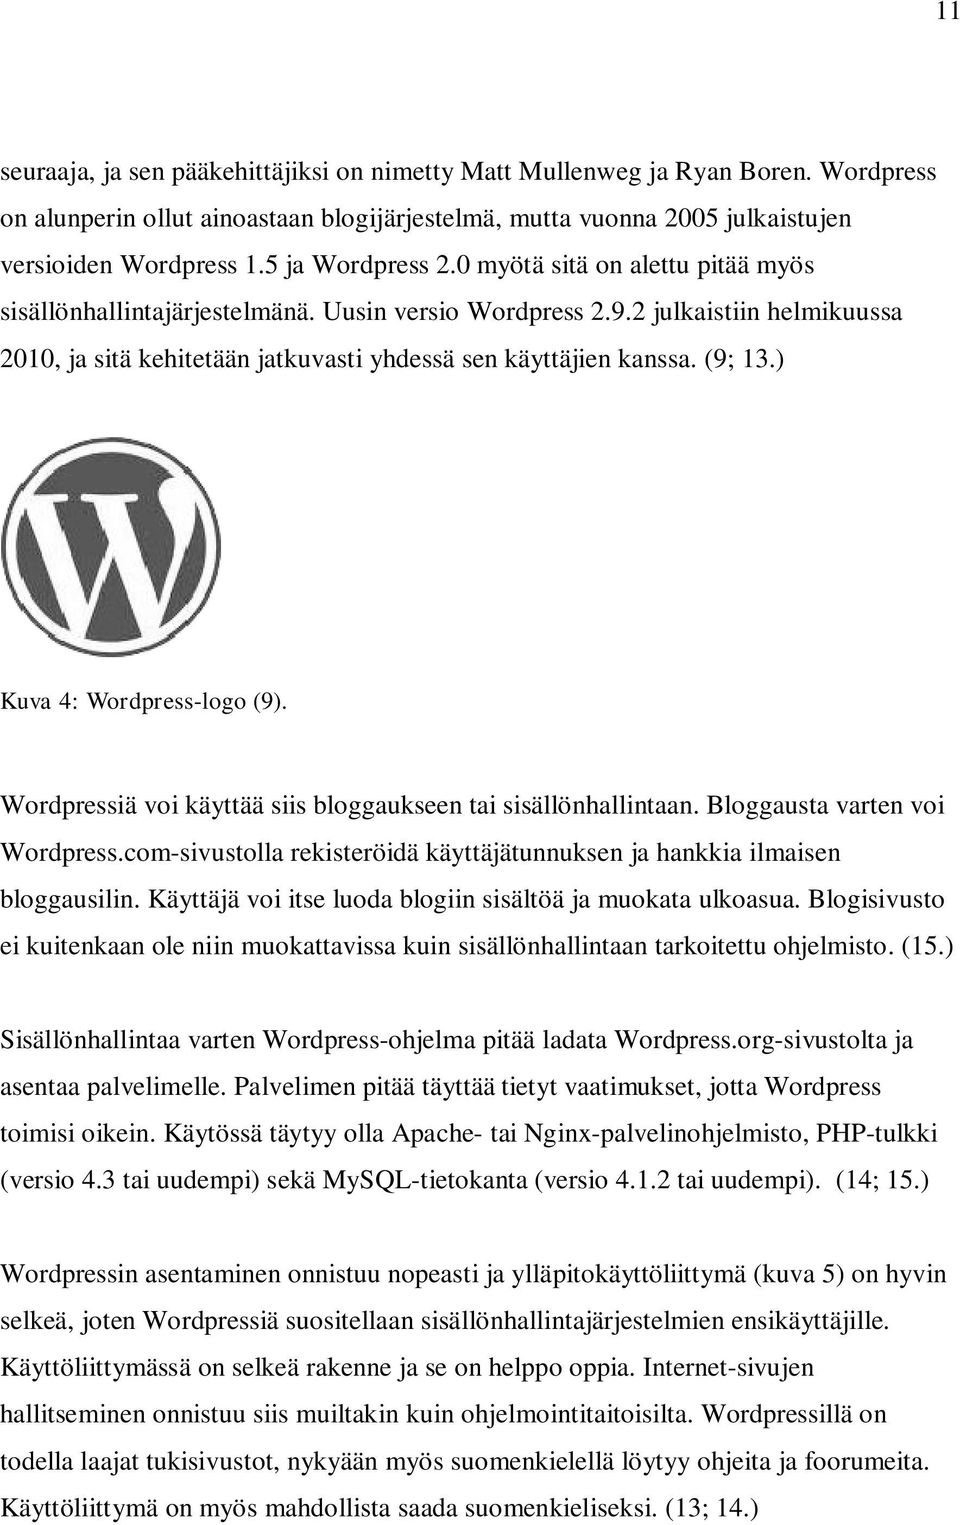 2 julkaistiin helmikuussa 2010, ja sitä kehitetään jatkuvasti yhdessä sen käyttäjien kanssa. (9; 13.) Kuva 4: Wordpress-logo (9). Wordpressiä voi käyttää siis bloggaukseen tai sisällönhallintaan.